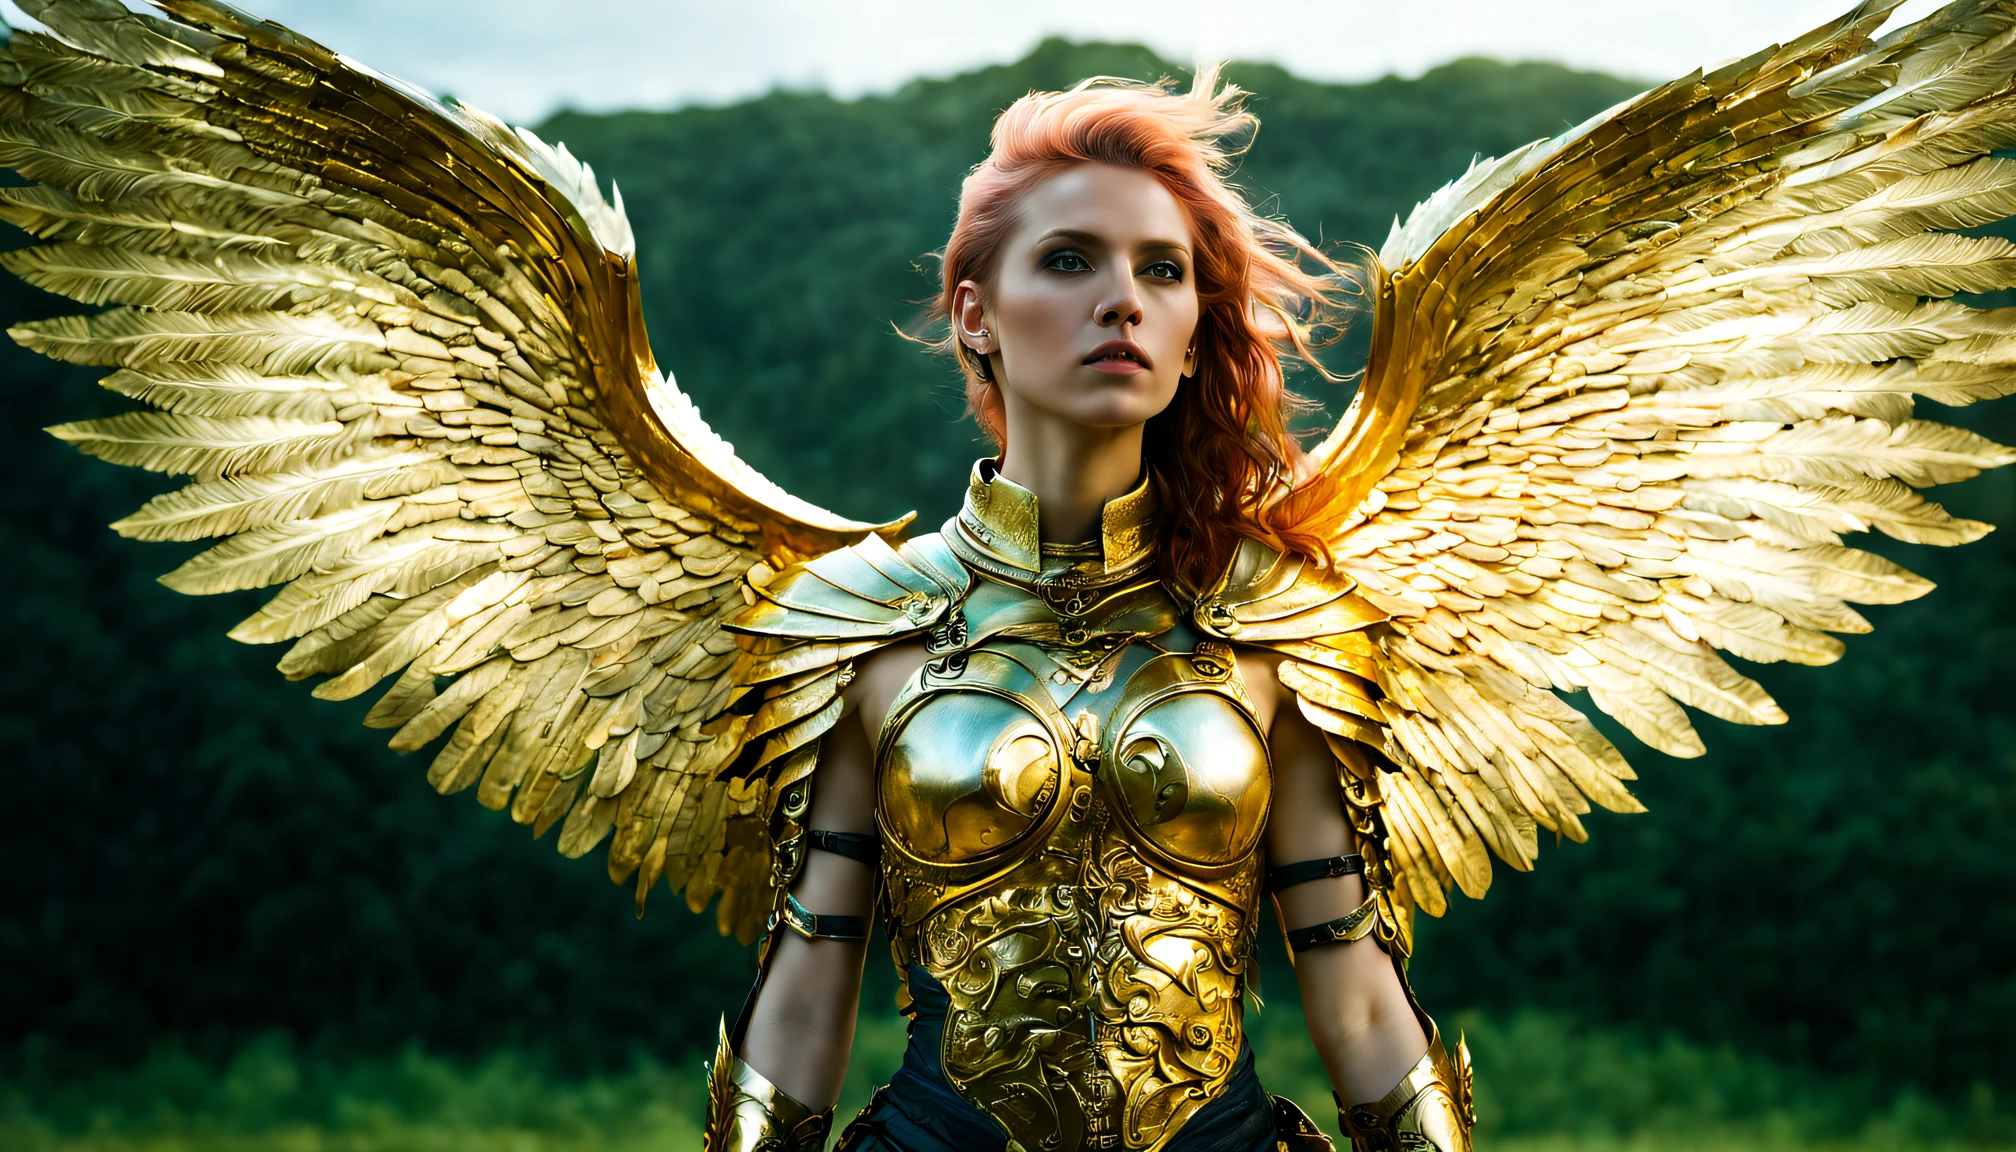 (광각),(에테르펑크 스타일:1.4),8K , 초고품질 ,자연, 이교도 이미지, intricate 상세한, 아름다운 발키리 ,gold 상세한 holy gorgeous armor, intricate 상세한 wide angelic wings on her back,천사의 날개를 활짝 펼치다,유토피아,마법,상세한,마법사,옥외,놀라운 풍경,(highly 상세한:1.2),(초현실주의:1.2), 현실적인, 상세한, 질감이 있는, 피부, 플래티넘 화이트 헤어, 녹색 눈, 알렉스 휴게트(Alex Huguet), 마이크 힐, 이안 스프릭스, 박재철, 마렉 덴코 ,디테일마스터2,더 자세히 XL,(반신 이미지)